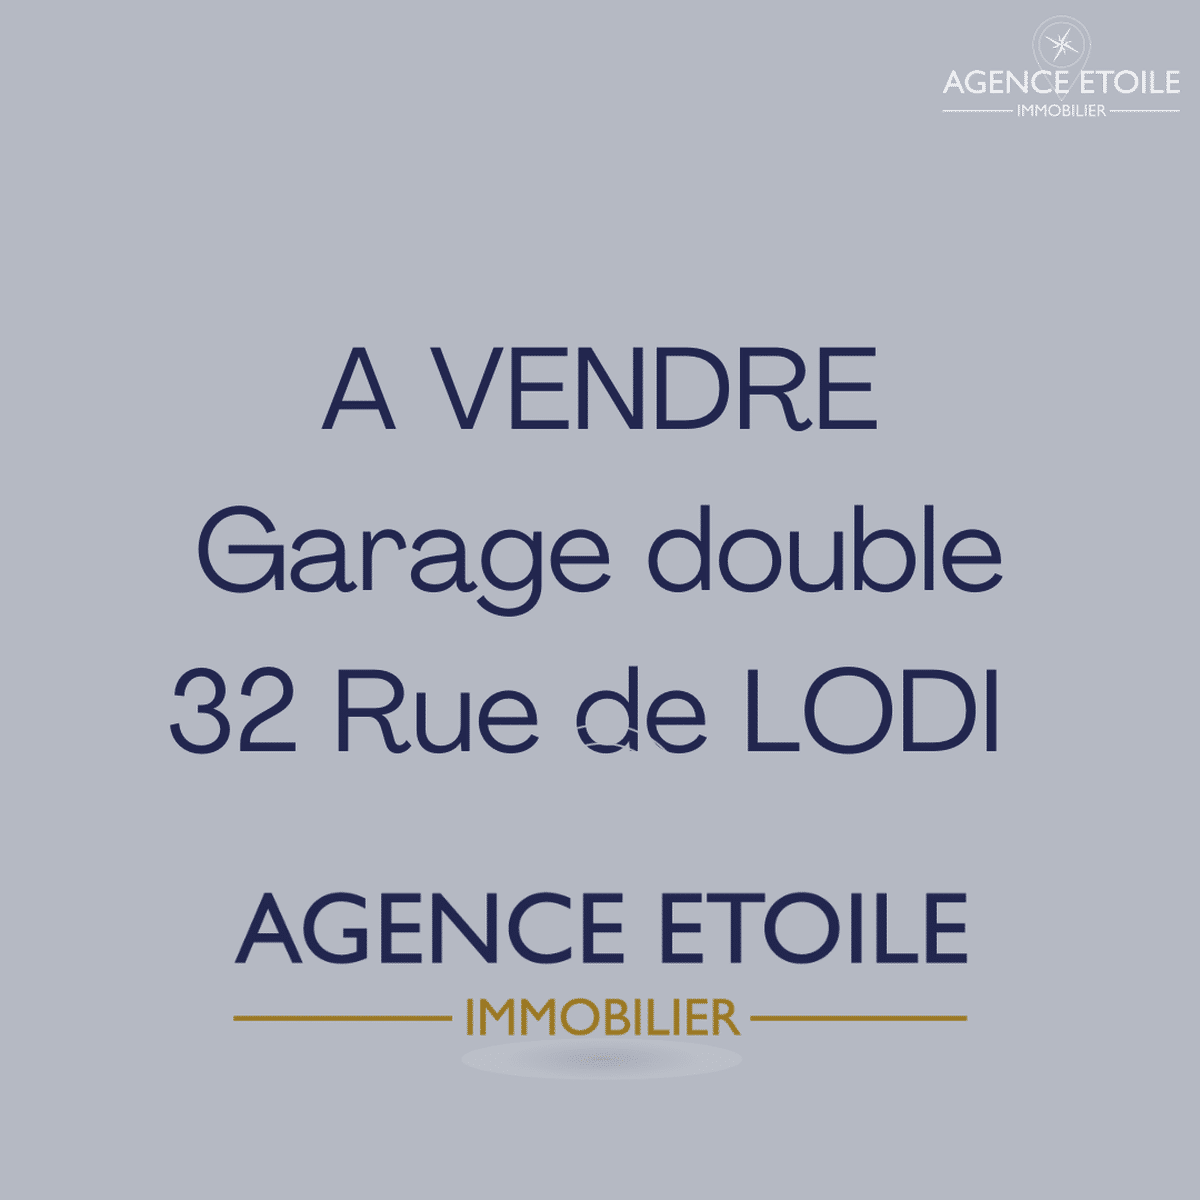 Marseille 6th rue de Lodi Garage Double